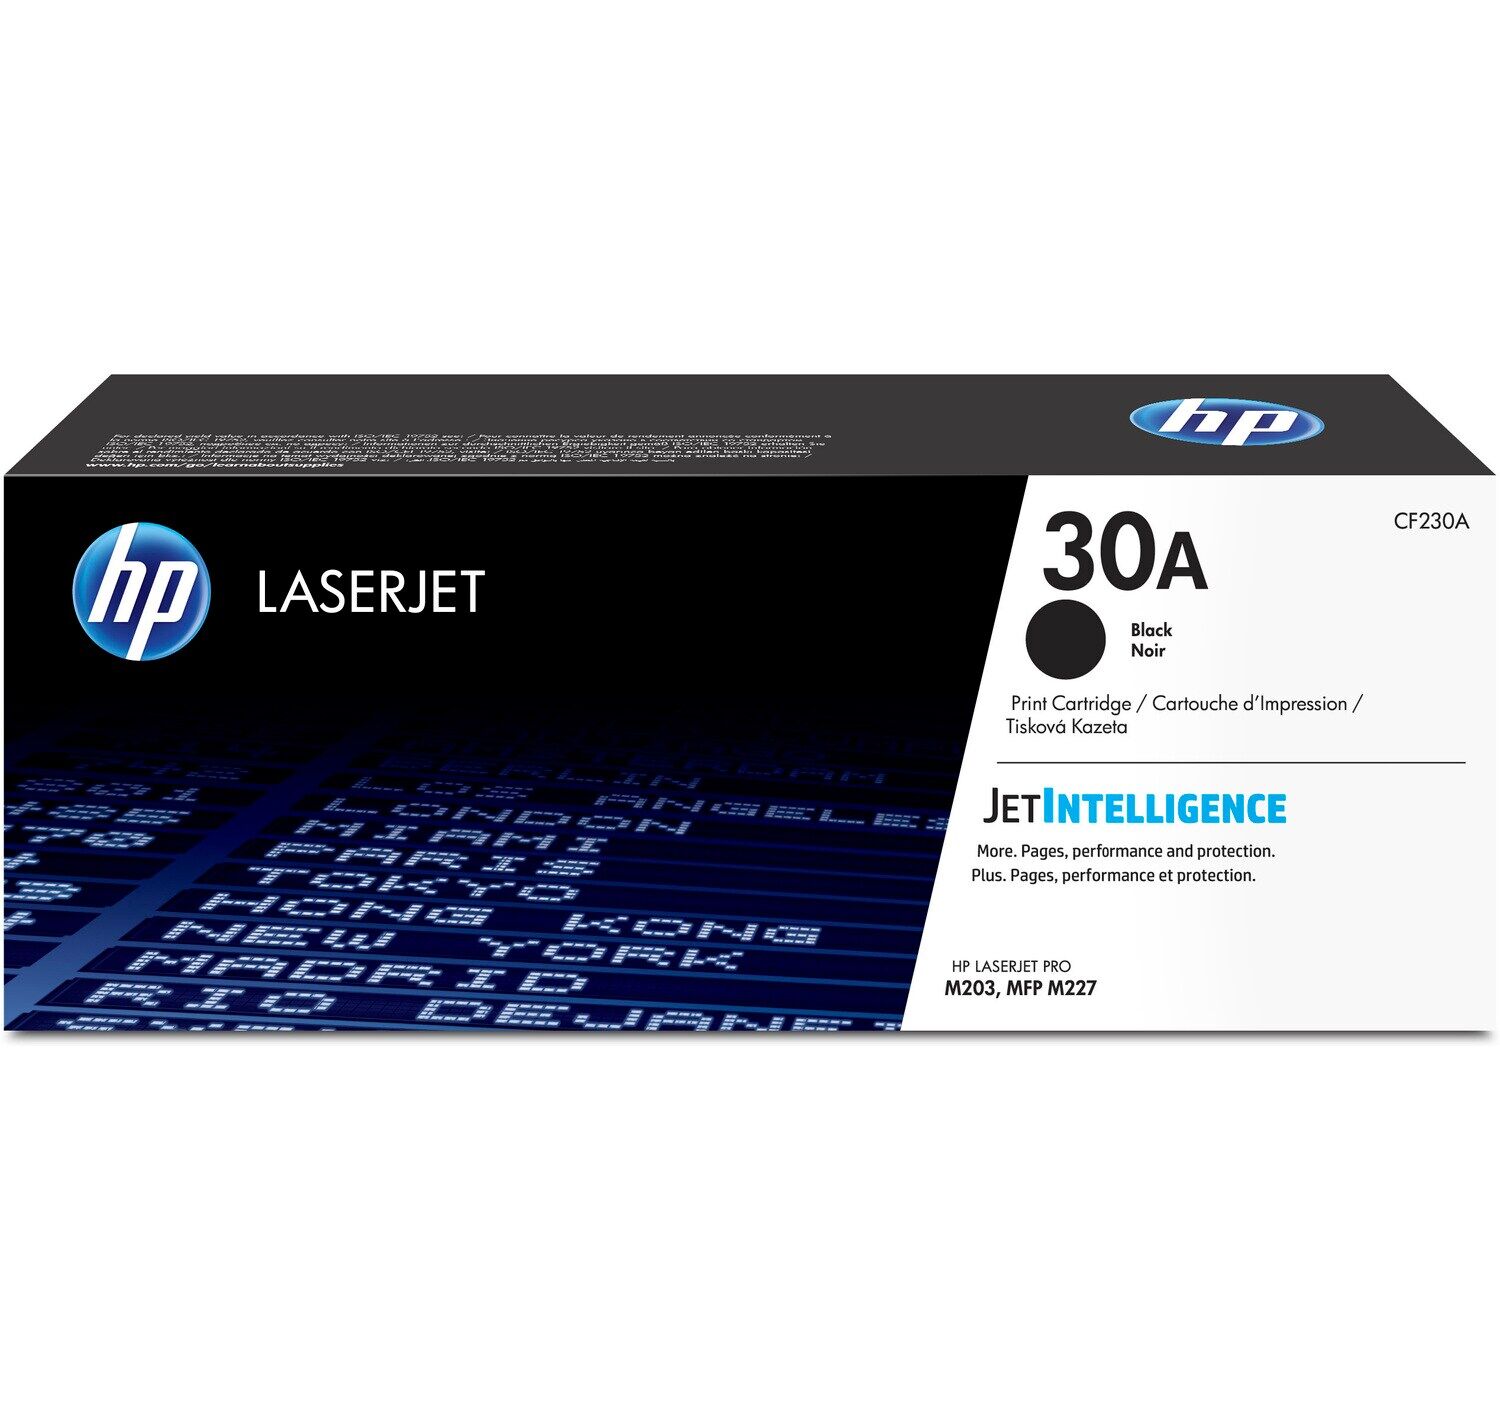 Картридж для печати HP Картридж HP 305A CF230A вид печати лазерный, цвет Черный, емкость